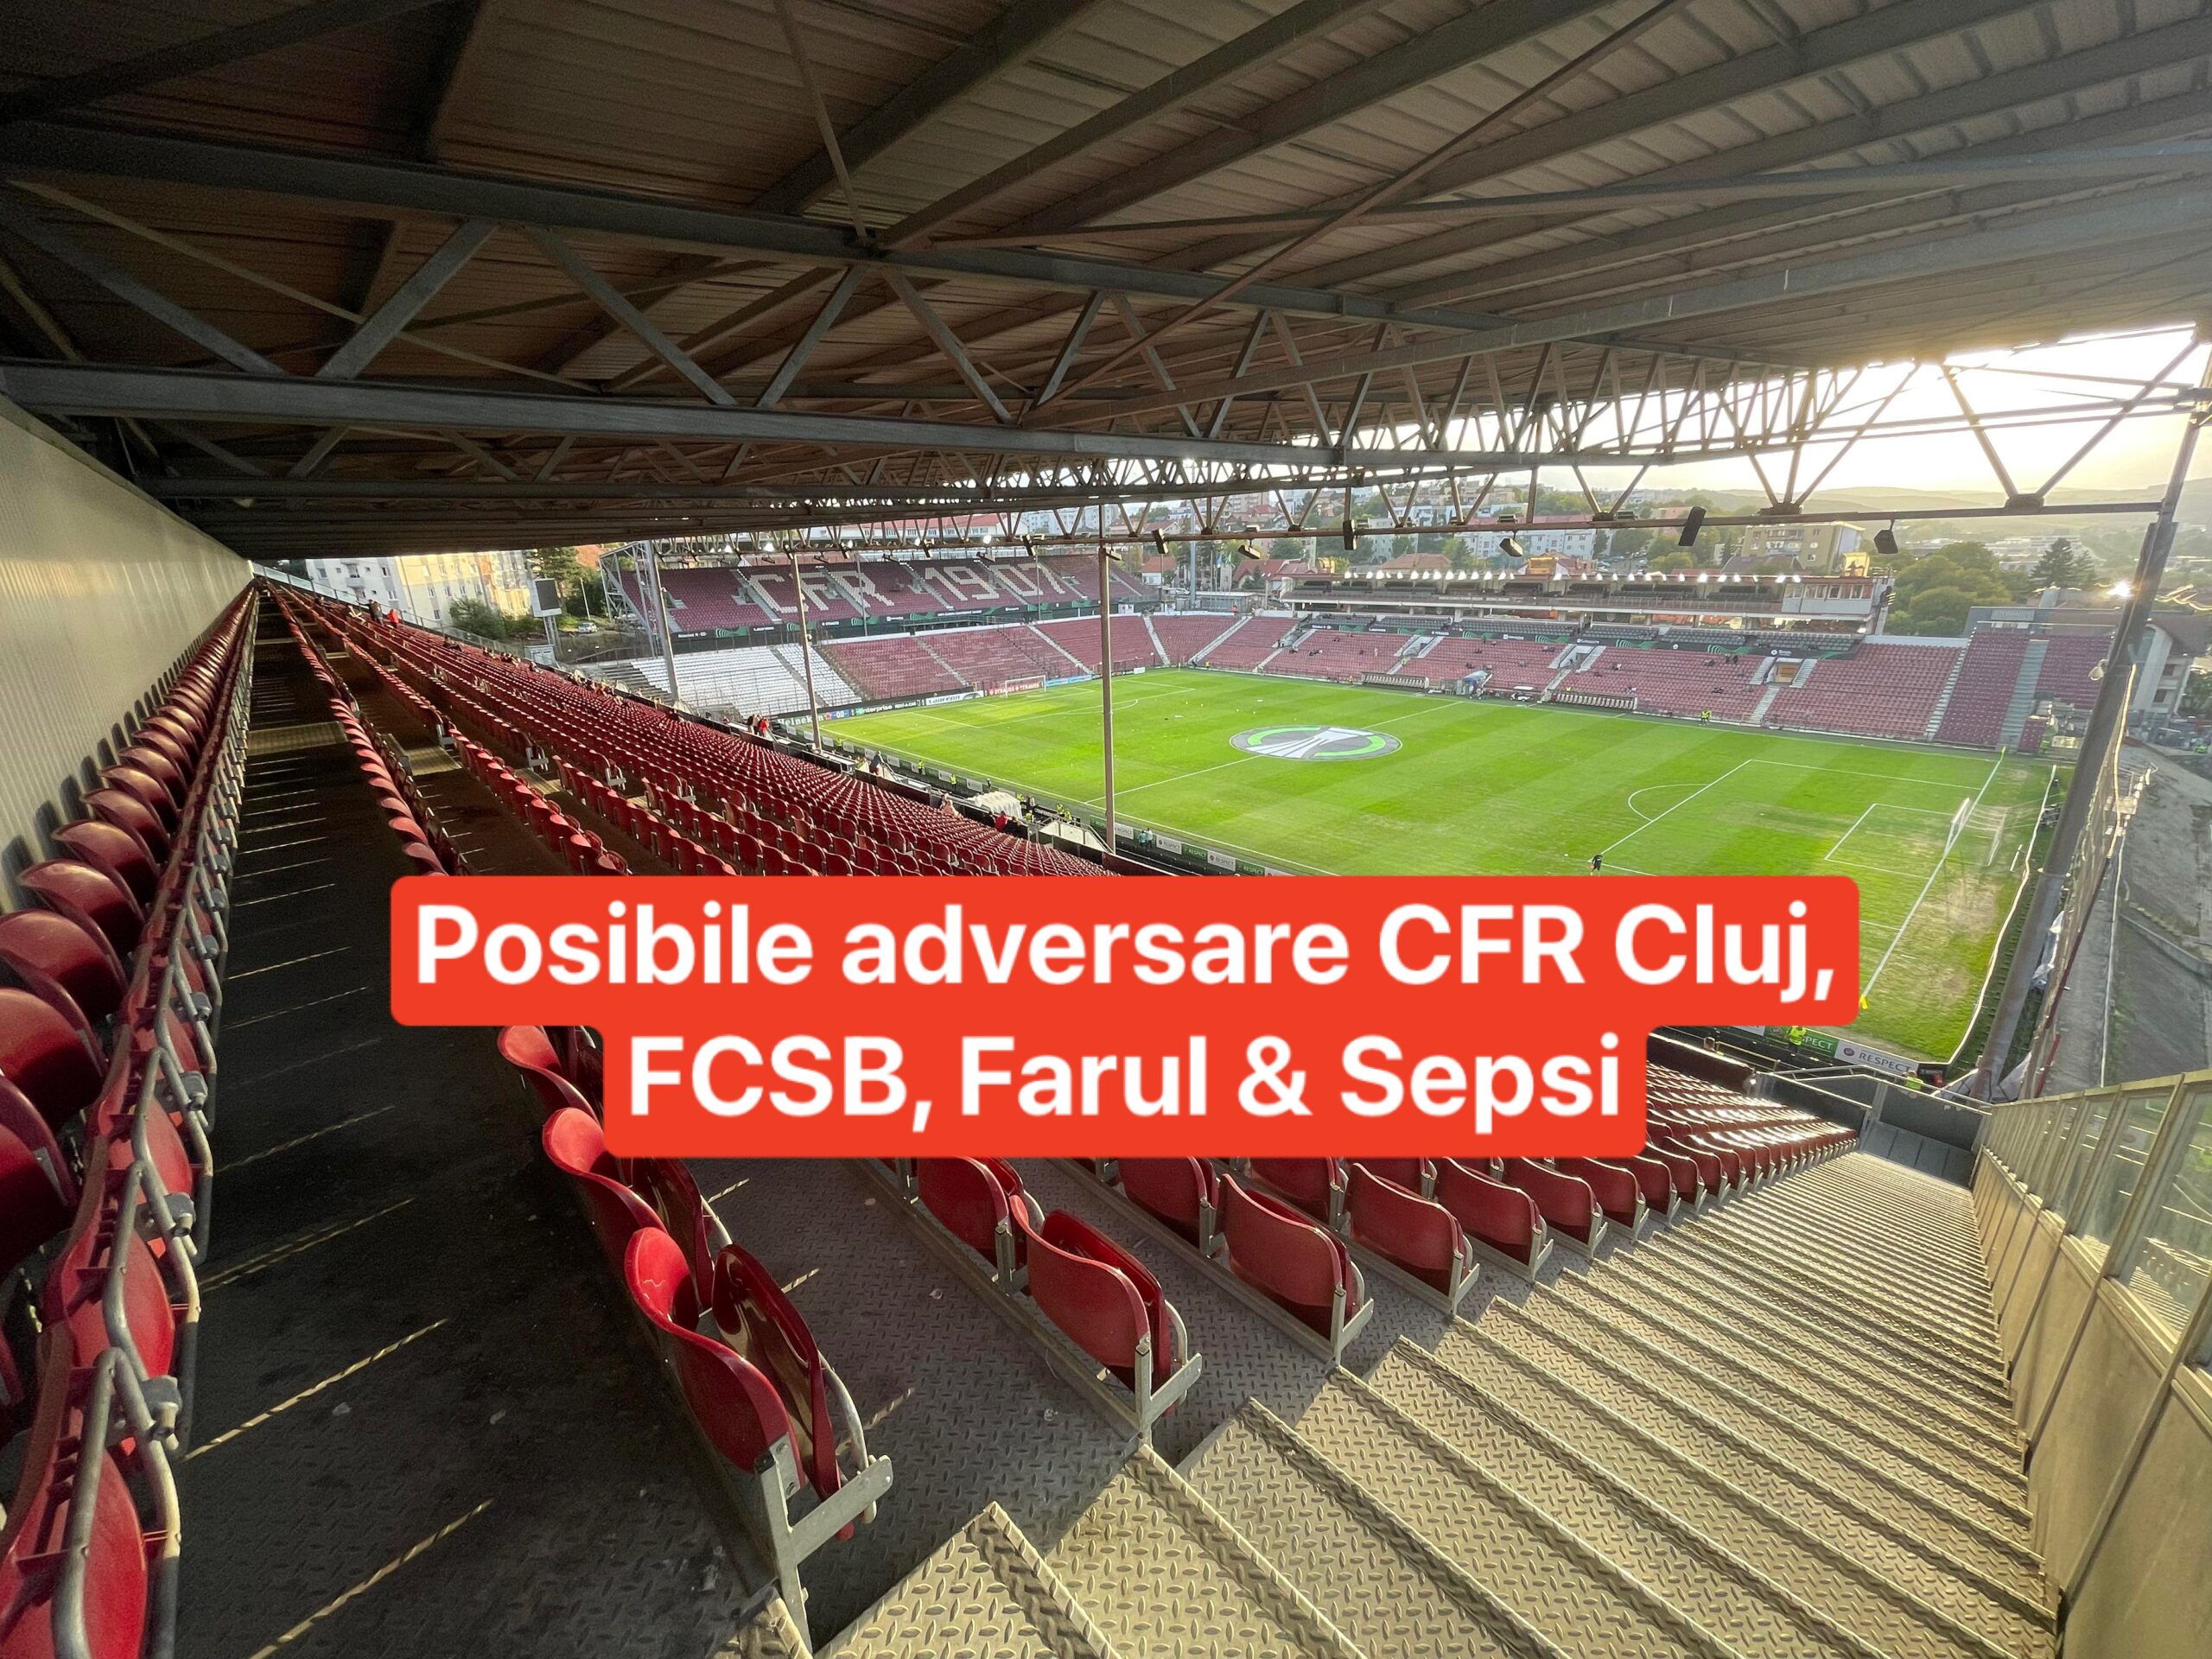 Cu ce adversare ar putea juca CFR Cluj, FCSB, Farul si Sepsi in cupele europene. Lista completa